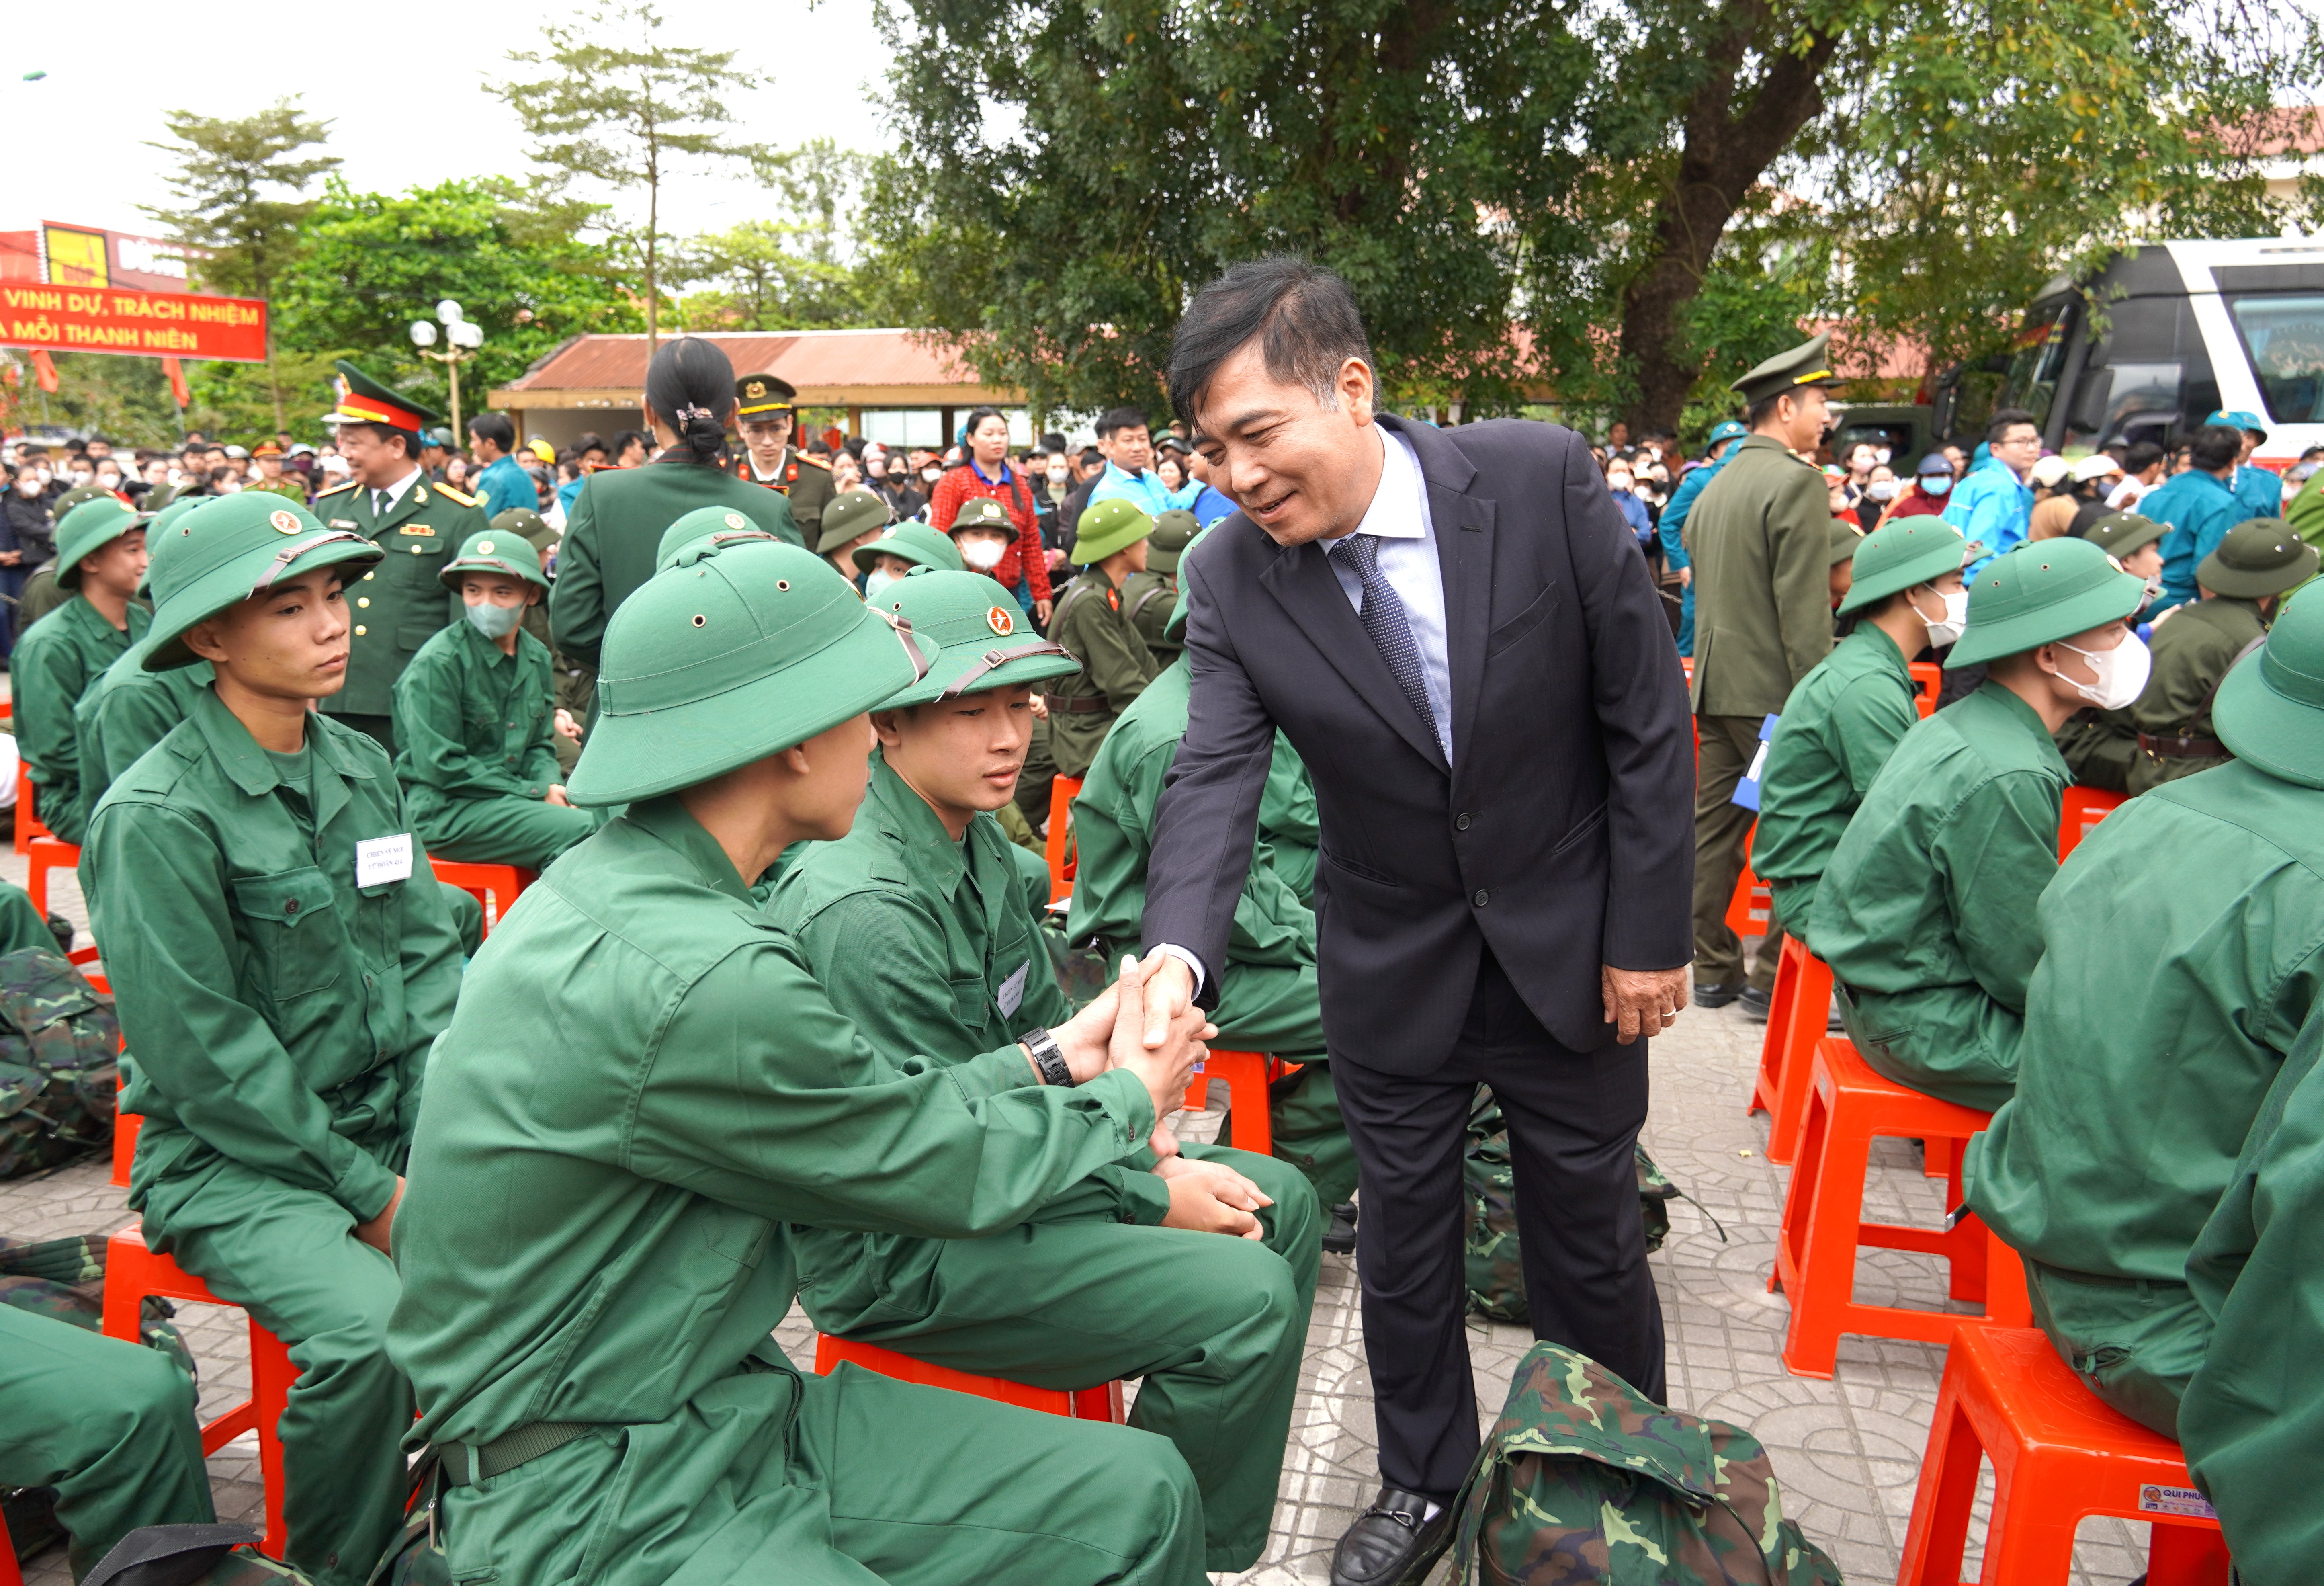 Đồng chí Đoàn Ngọc Lâm, Phó Chủ tịch Thường trực UBND tỉnh bắt tay động viên, căn dặn các tân binh trước giờ lên đường nhập ngũ.